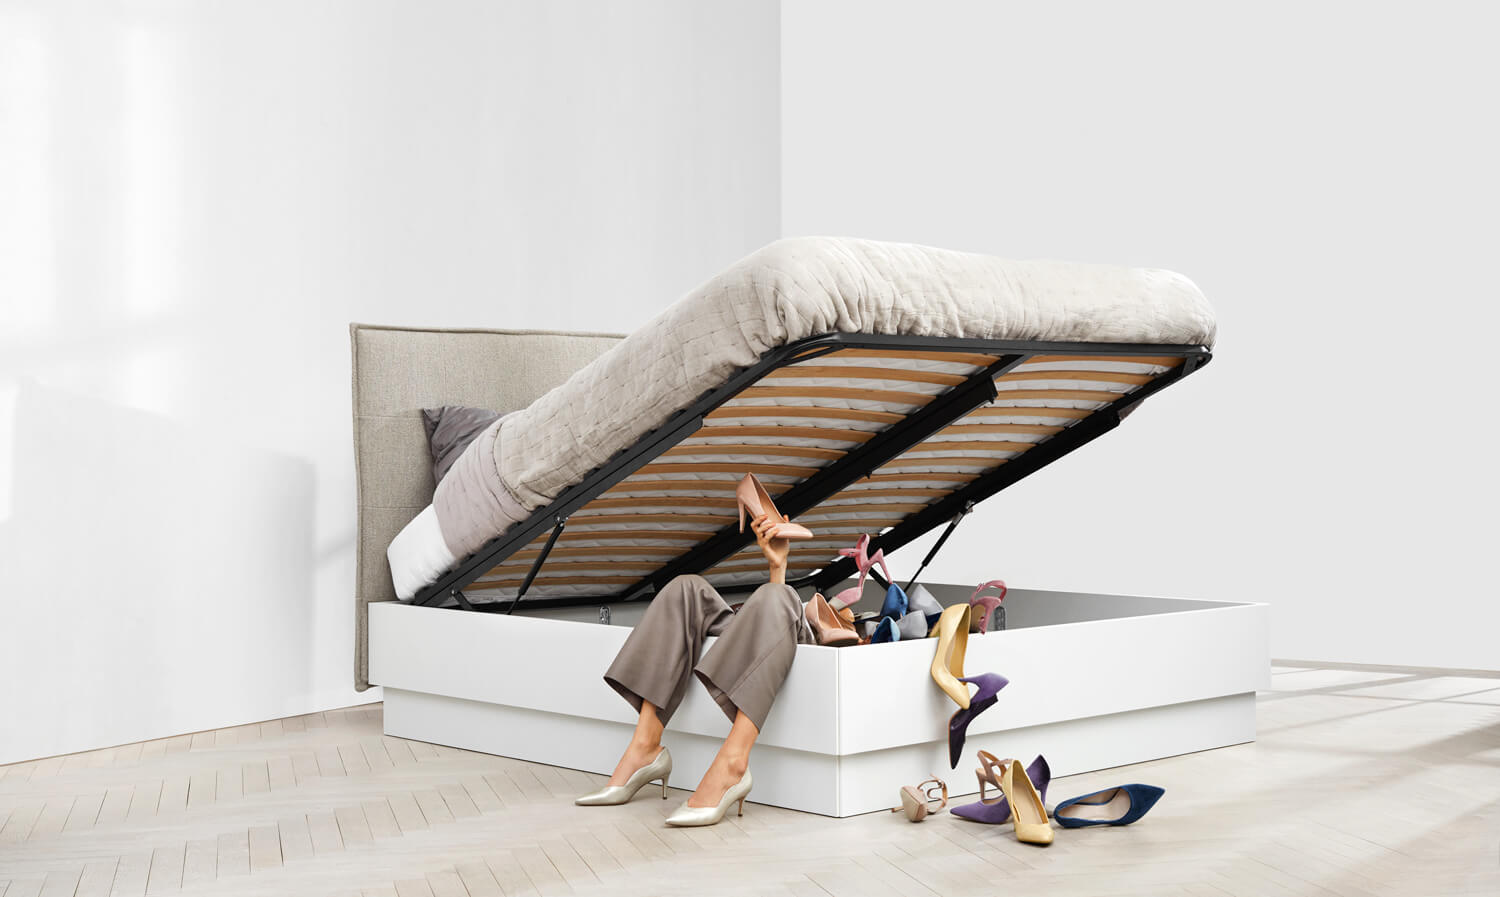 Multifuncional cama LUGANO Ya puede ampliar cada espacio de su casa con estos muebles multifuncionales